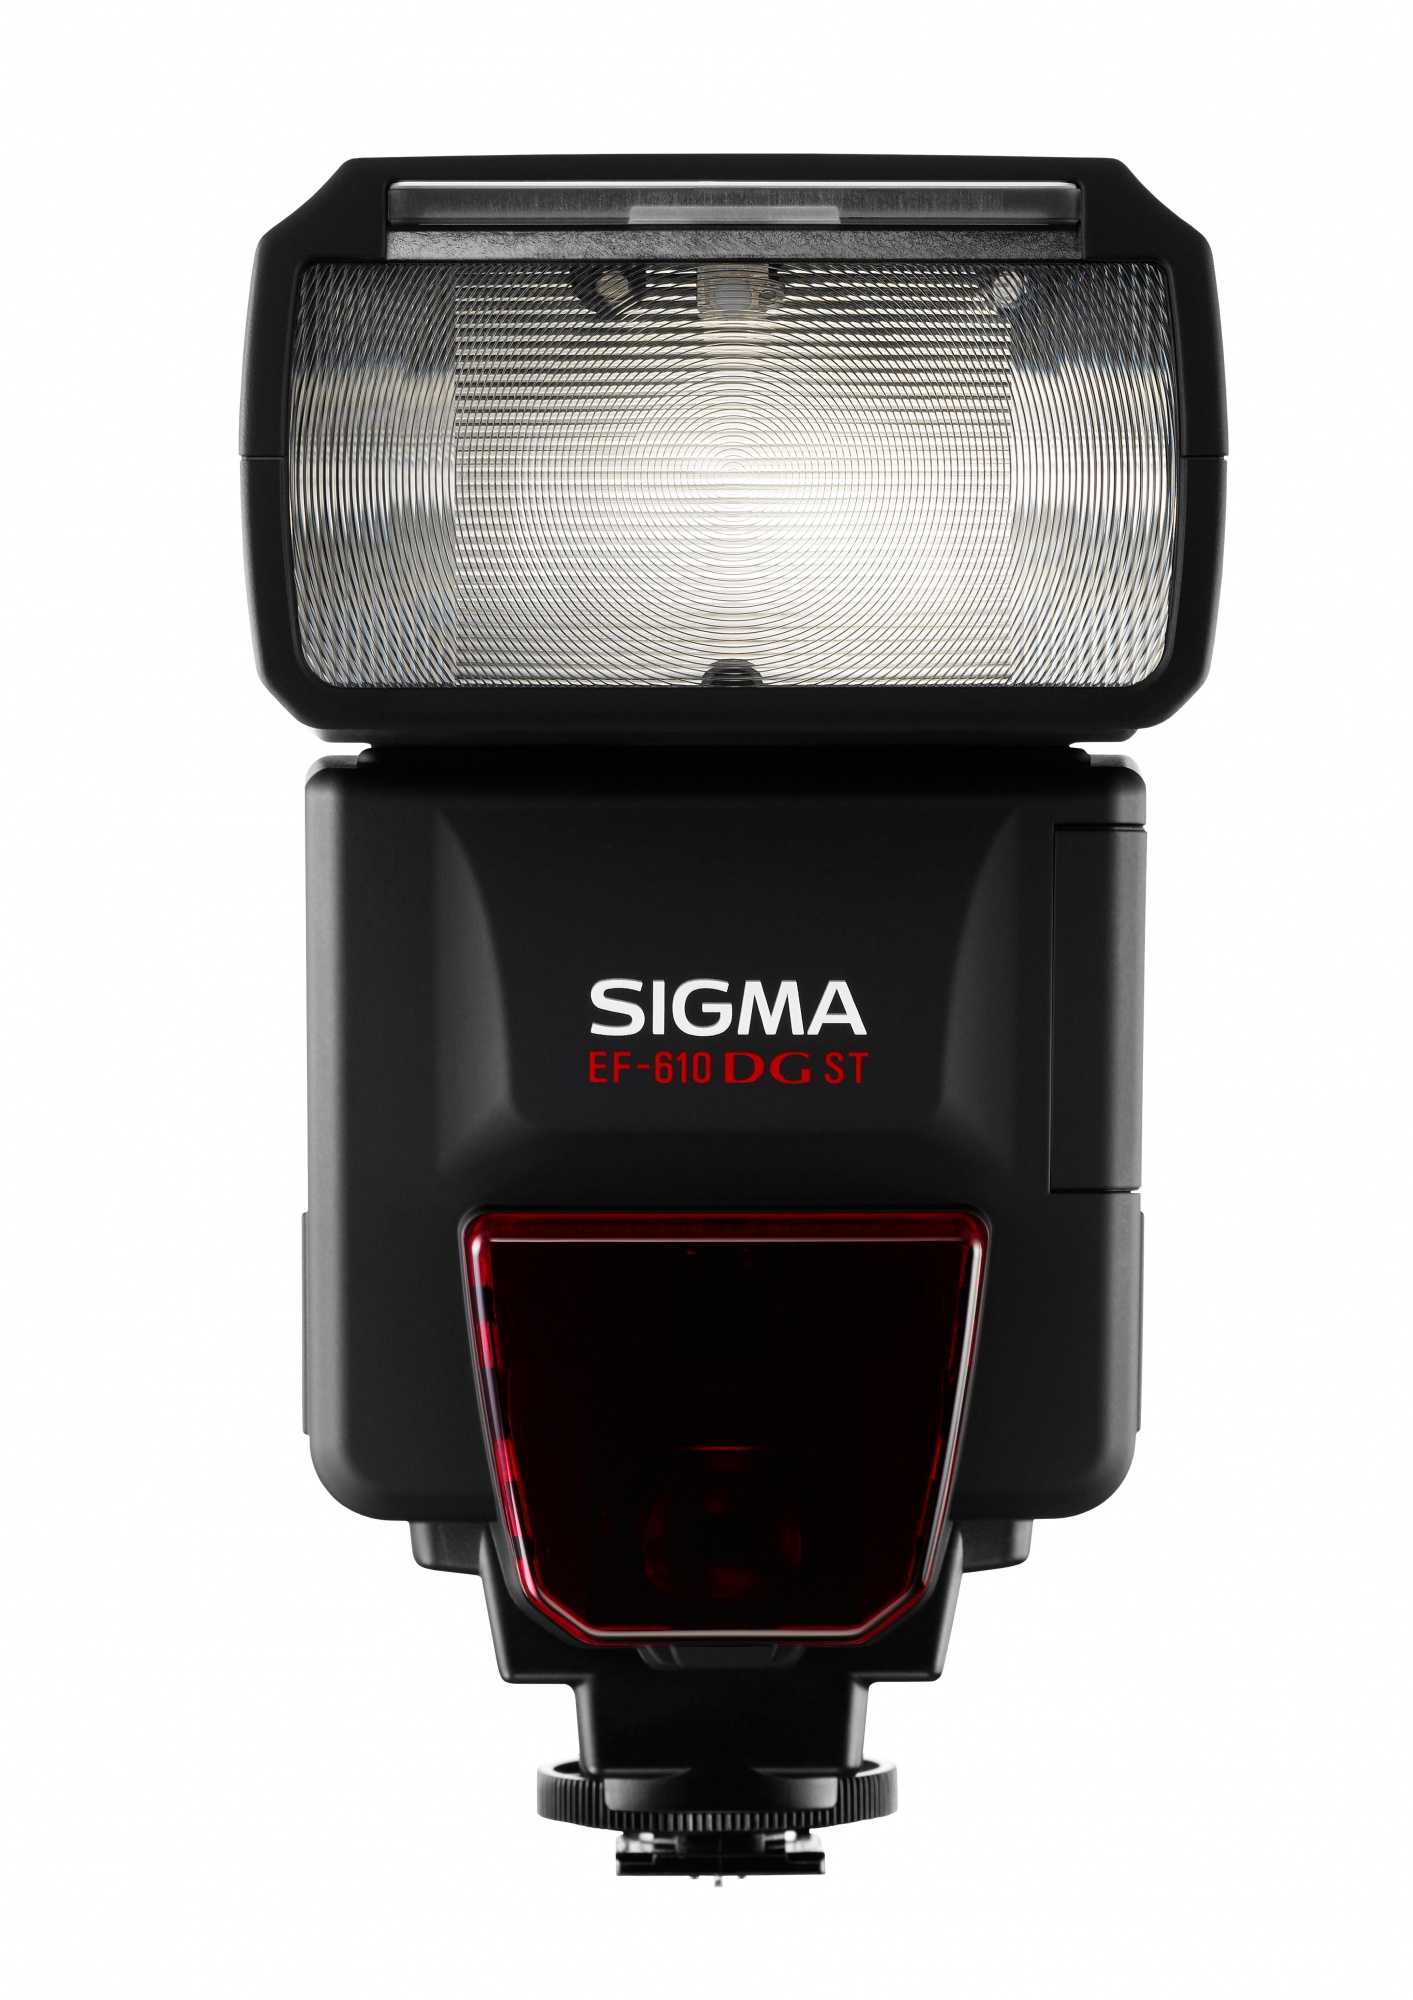 Sigma ef 610 dg st for pentax купить по акционной цене , отзывы и обзоры.